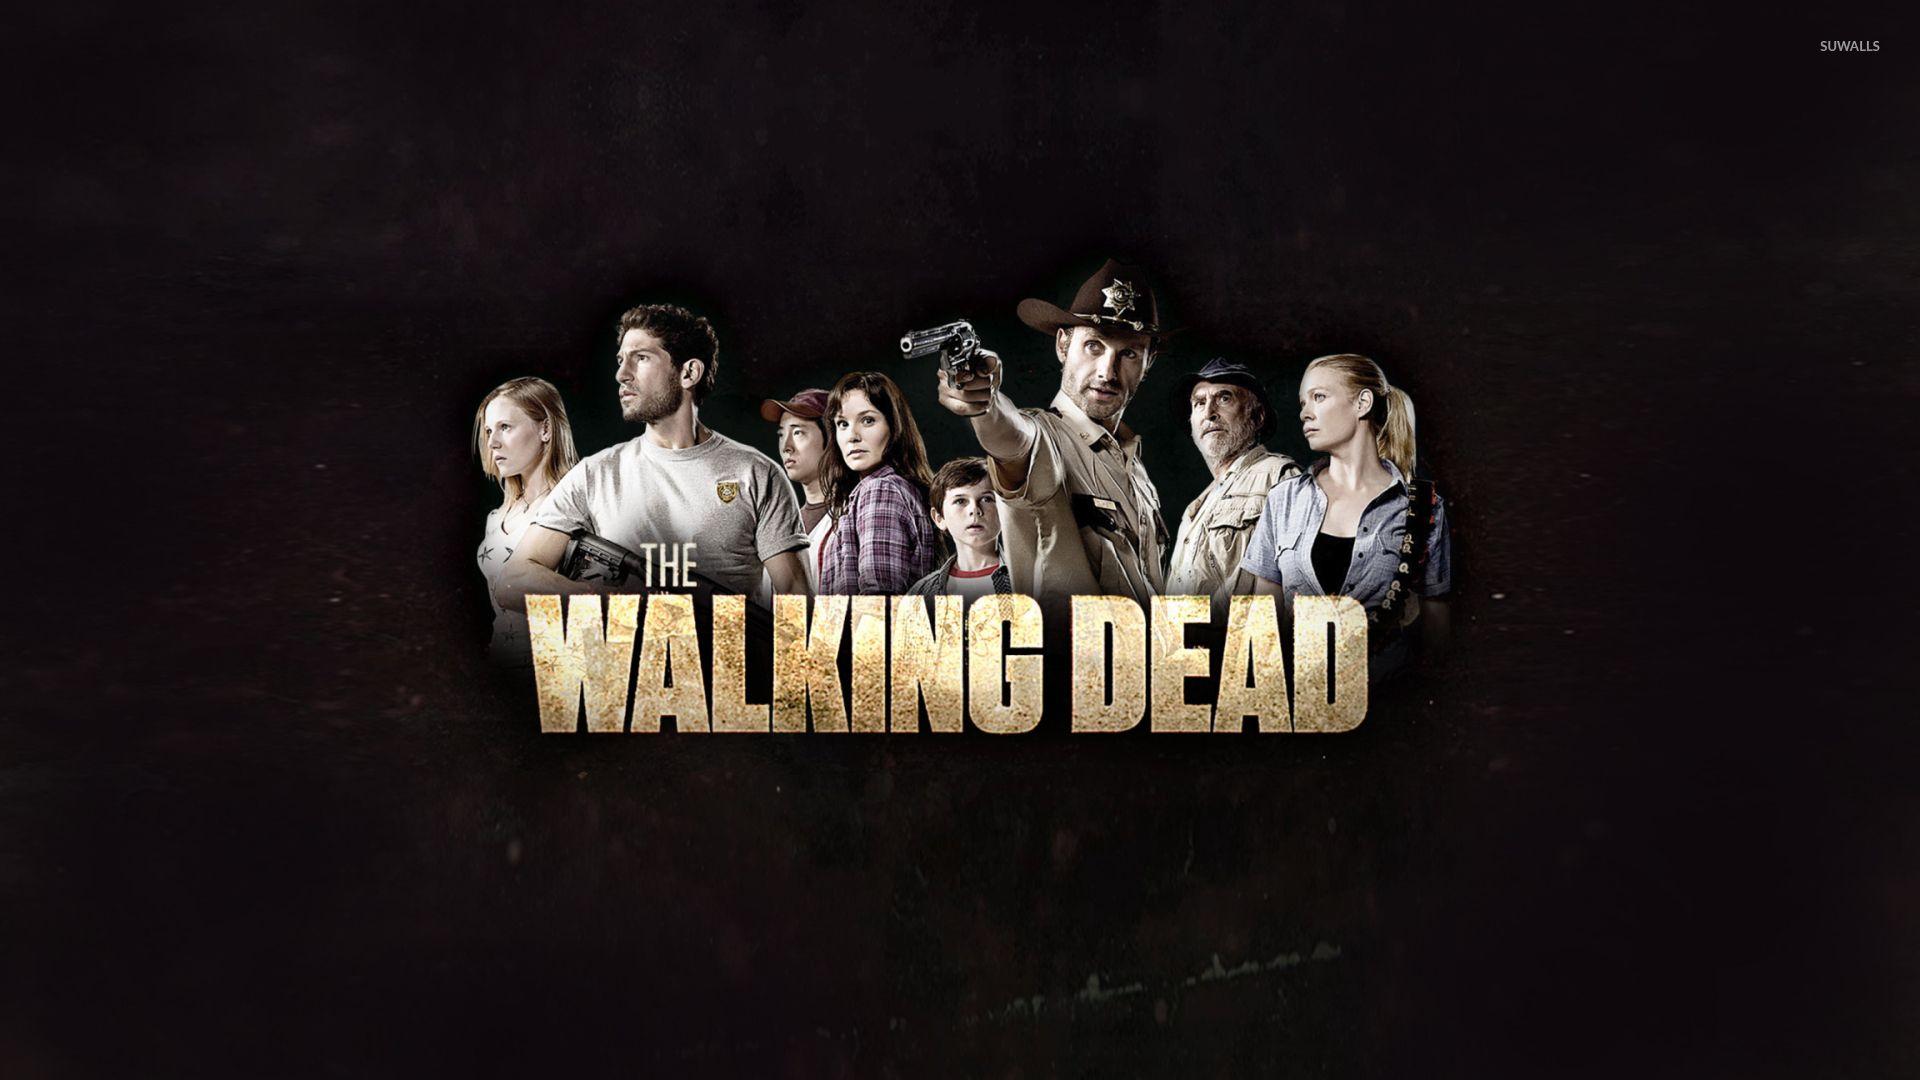 The Walking Dead [11] wallpaper Show wallpaper